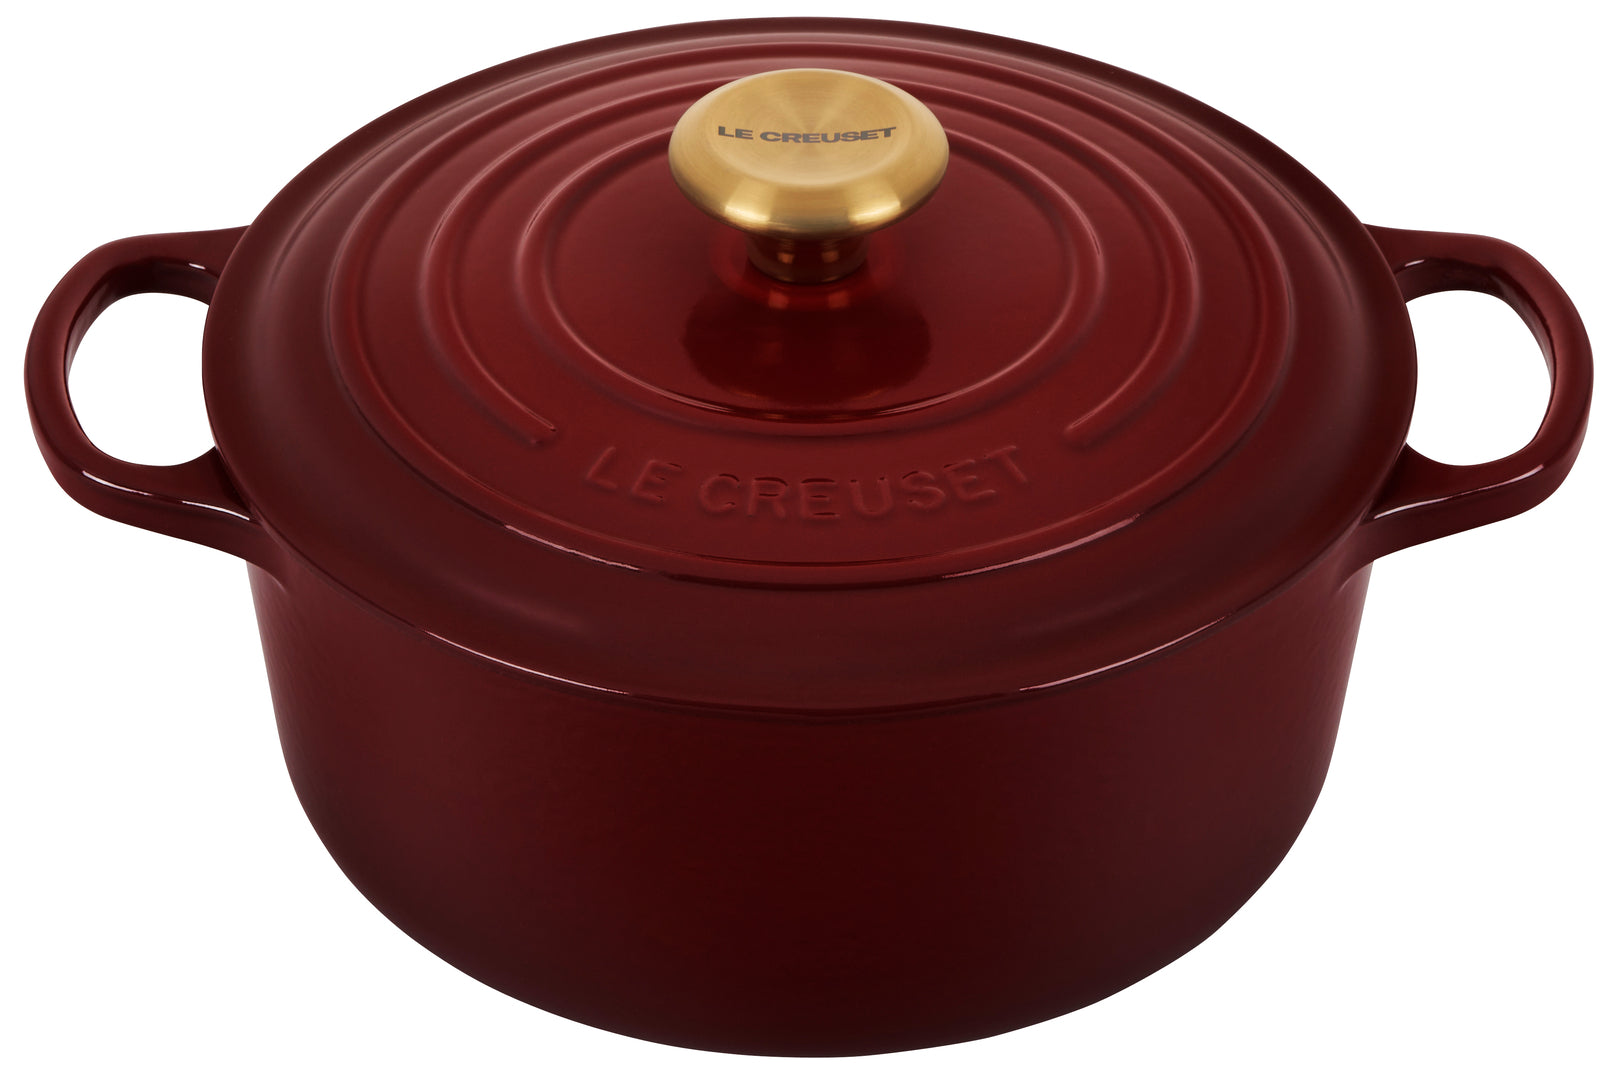 Le Creuset Signature Cast Iron 4.5-Quart Rhone Round Dutch Oven